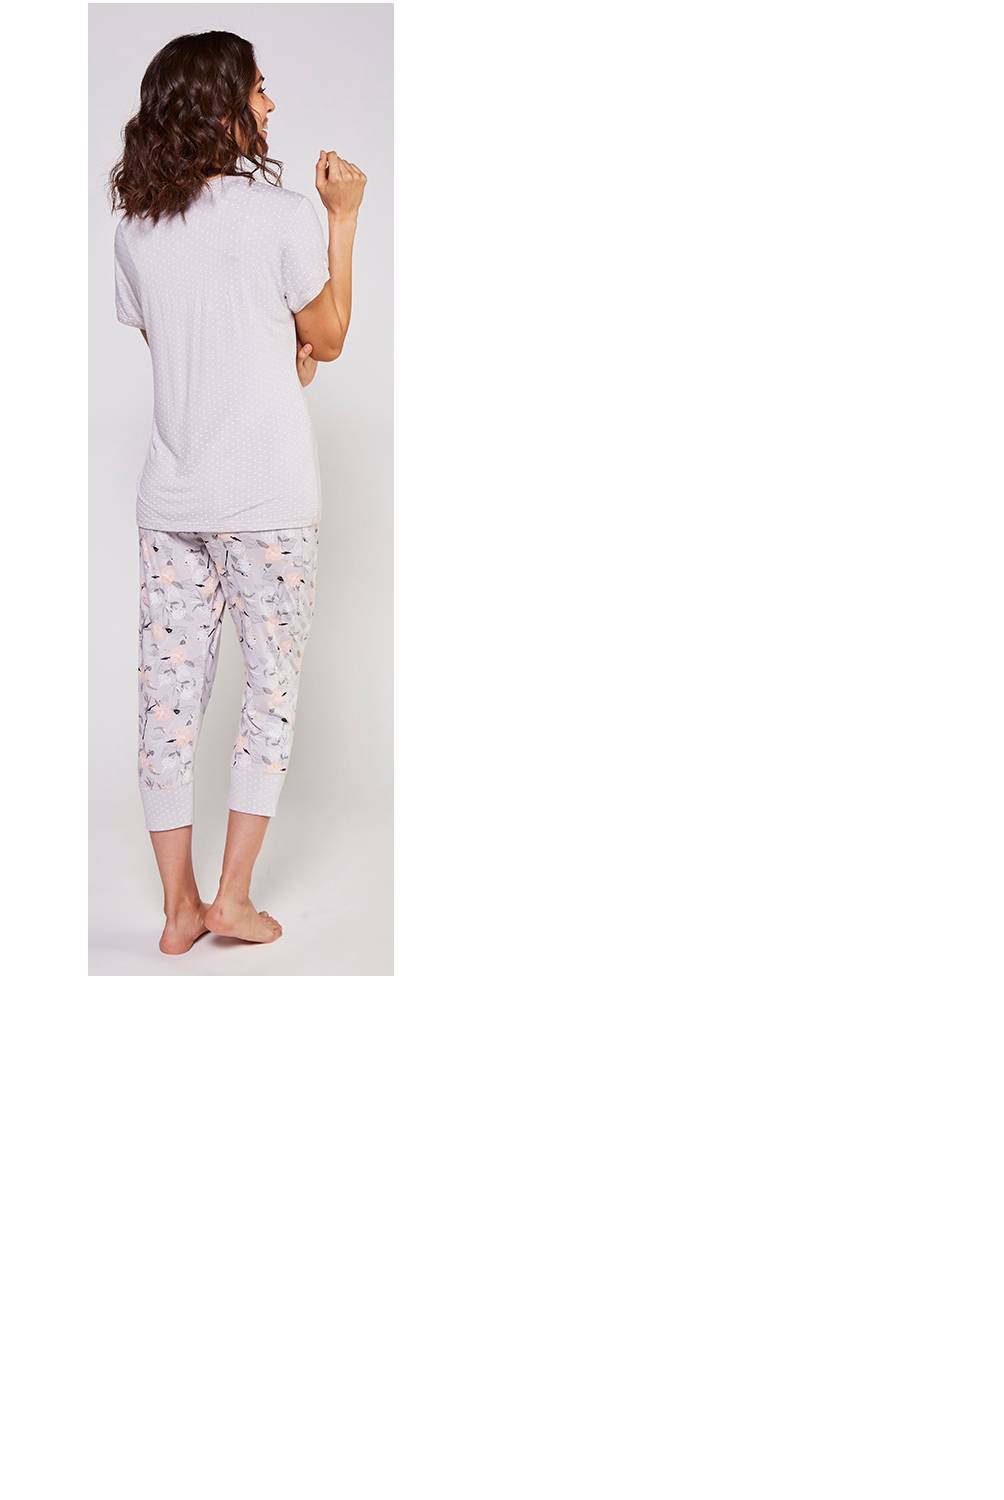 KAYSER - Pijama Mujer Capri Viscosa Gris Kayser 70834